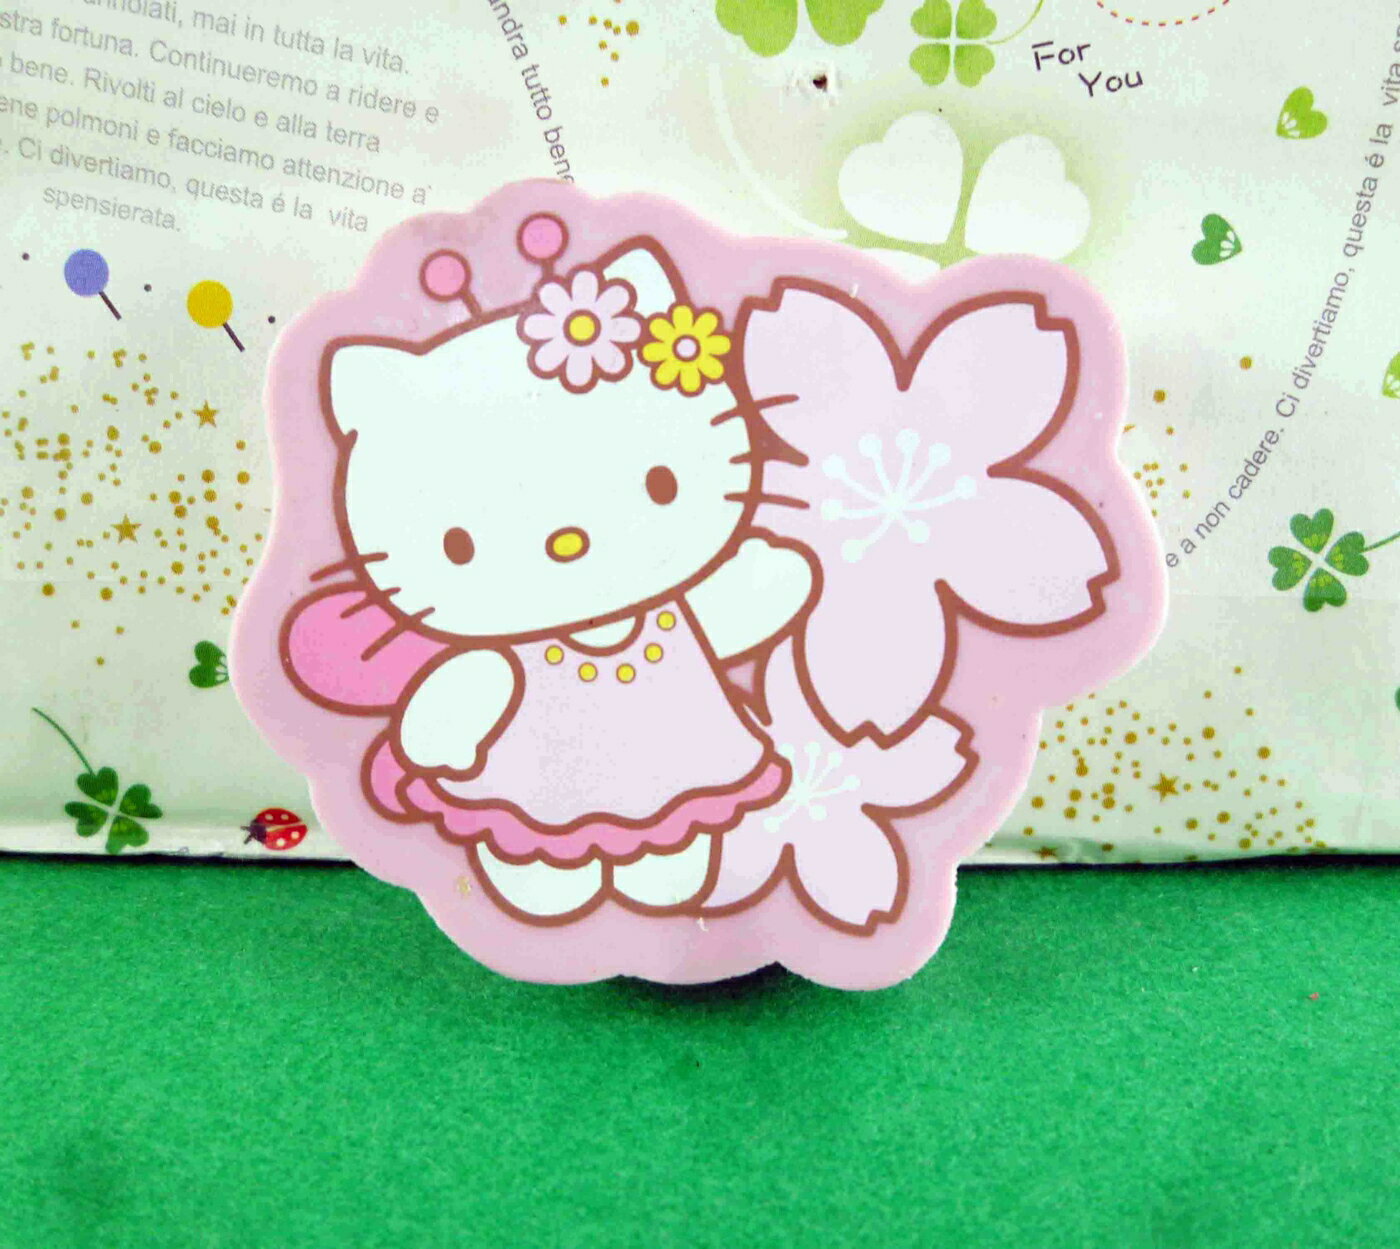 【震撼精品百貨】Hello Kitty 凱蒂貓 造型橡皮擦-粉櫻花 震撼日式精品百貨